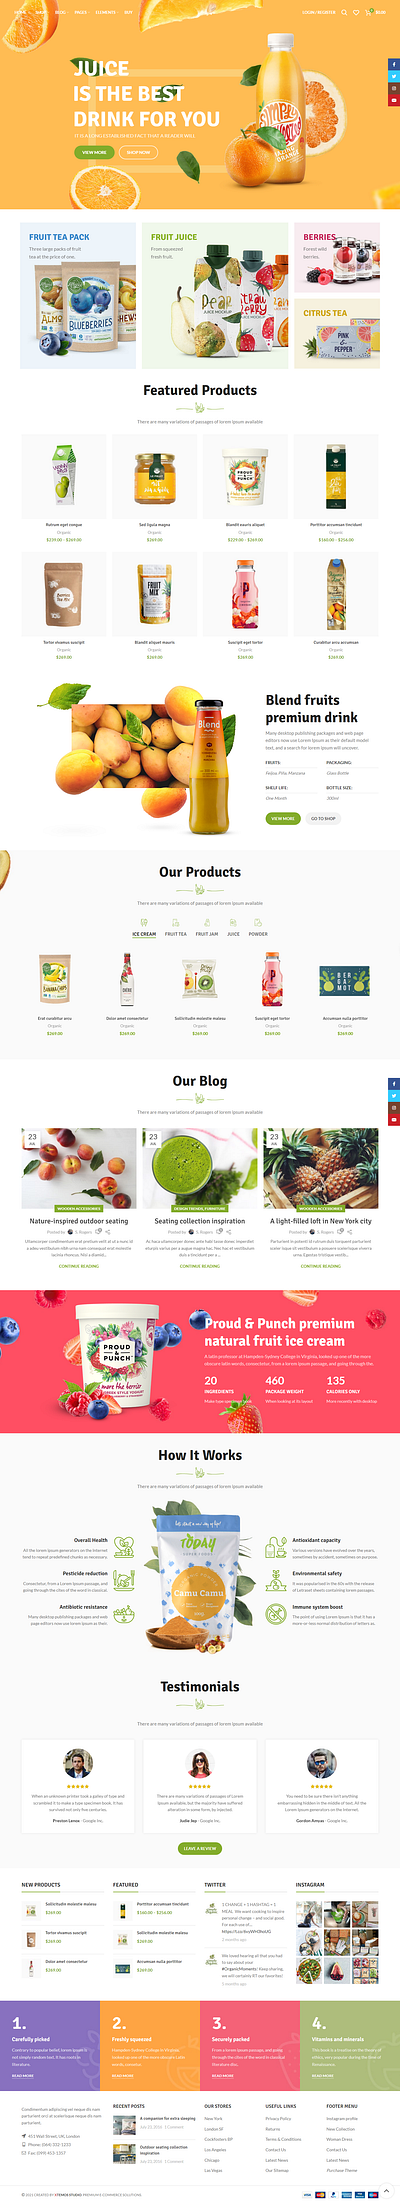 Juice Company Website juice company website wordpress website